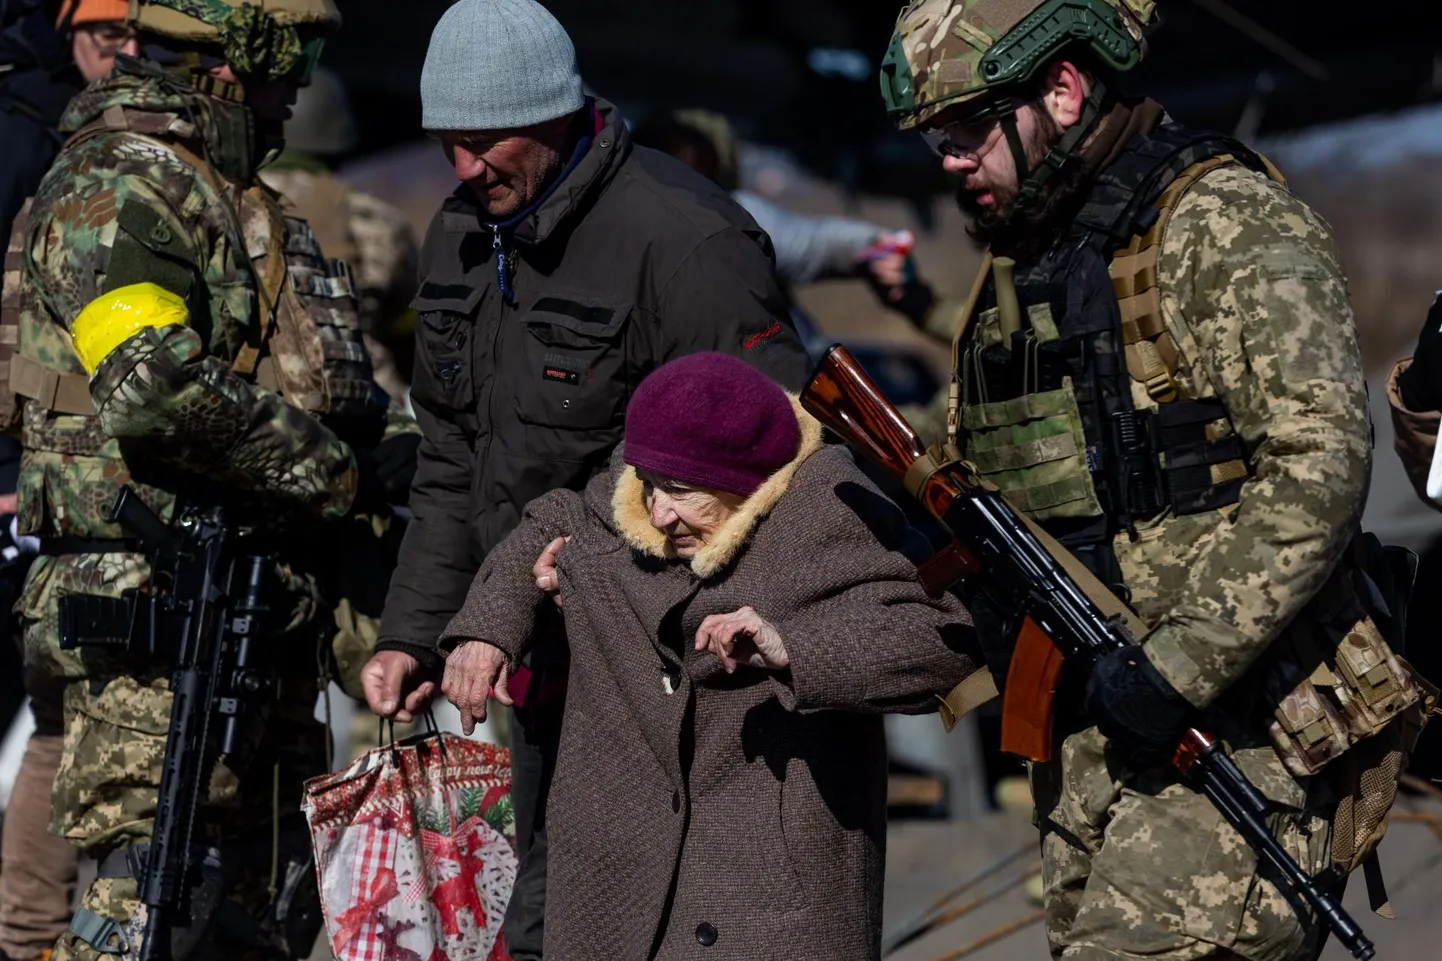 Kiievi läänepoolsest eeslinnast Irpinist evakueeriti 2022. aastal inimesi üle puruks pommitatud silla. Samal ajal käisid linnas lahingud. Viljandimaa omavalitsused suudaksid praegu evakueerida kõigest mõne protsendi elanikest. 